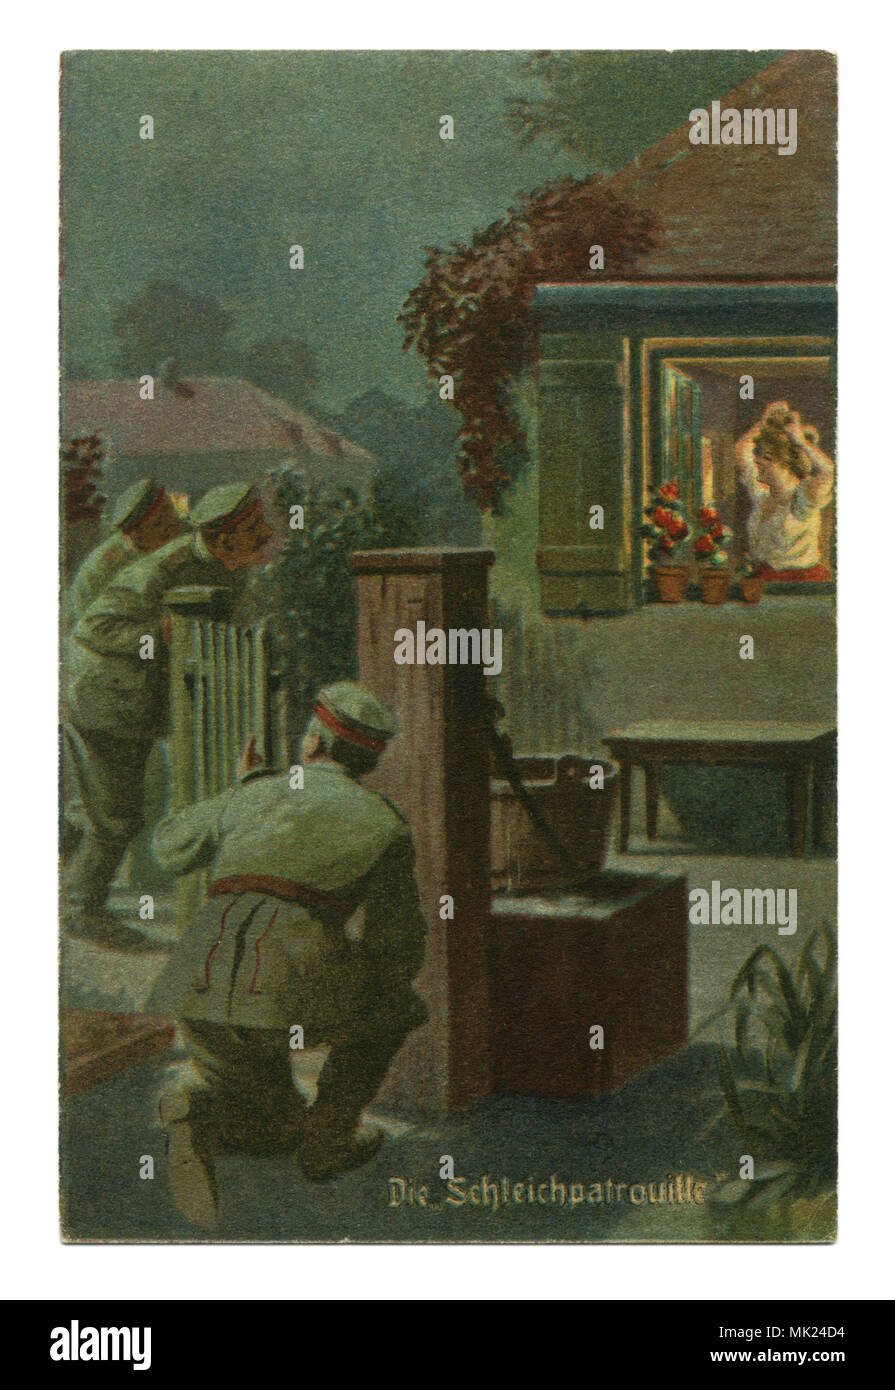 Ancienne carte postale militaire allemand :-série humoristique 'Toujours' professionnel, № 3 'Silent watch'. La première guerre mondiale 1914-1918, Allemagne Banque D'Images